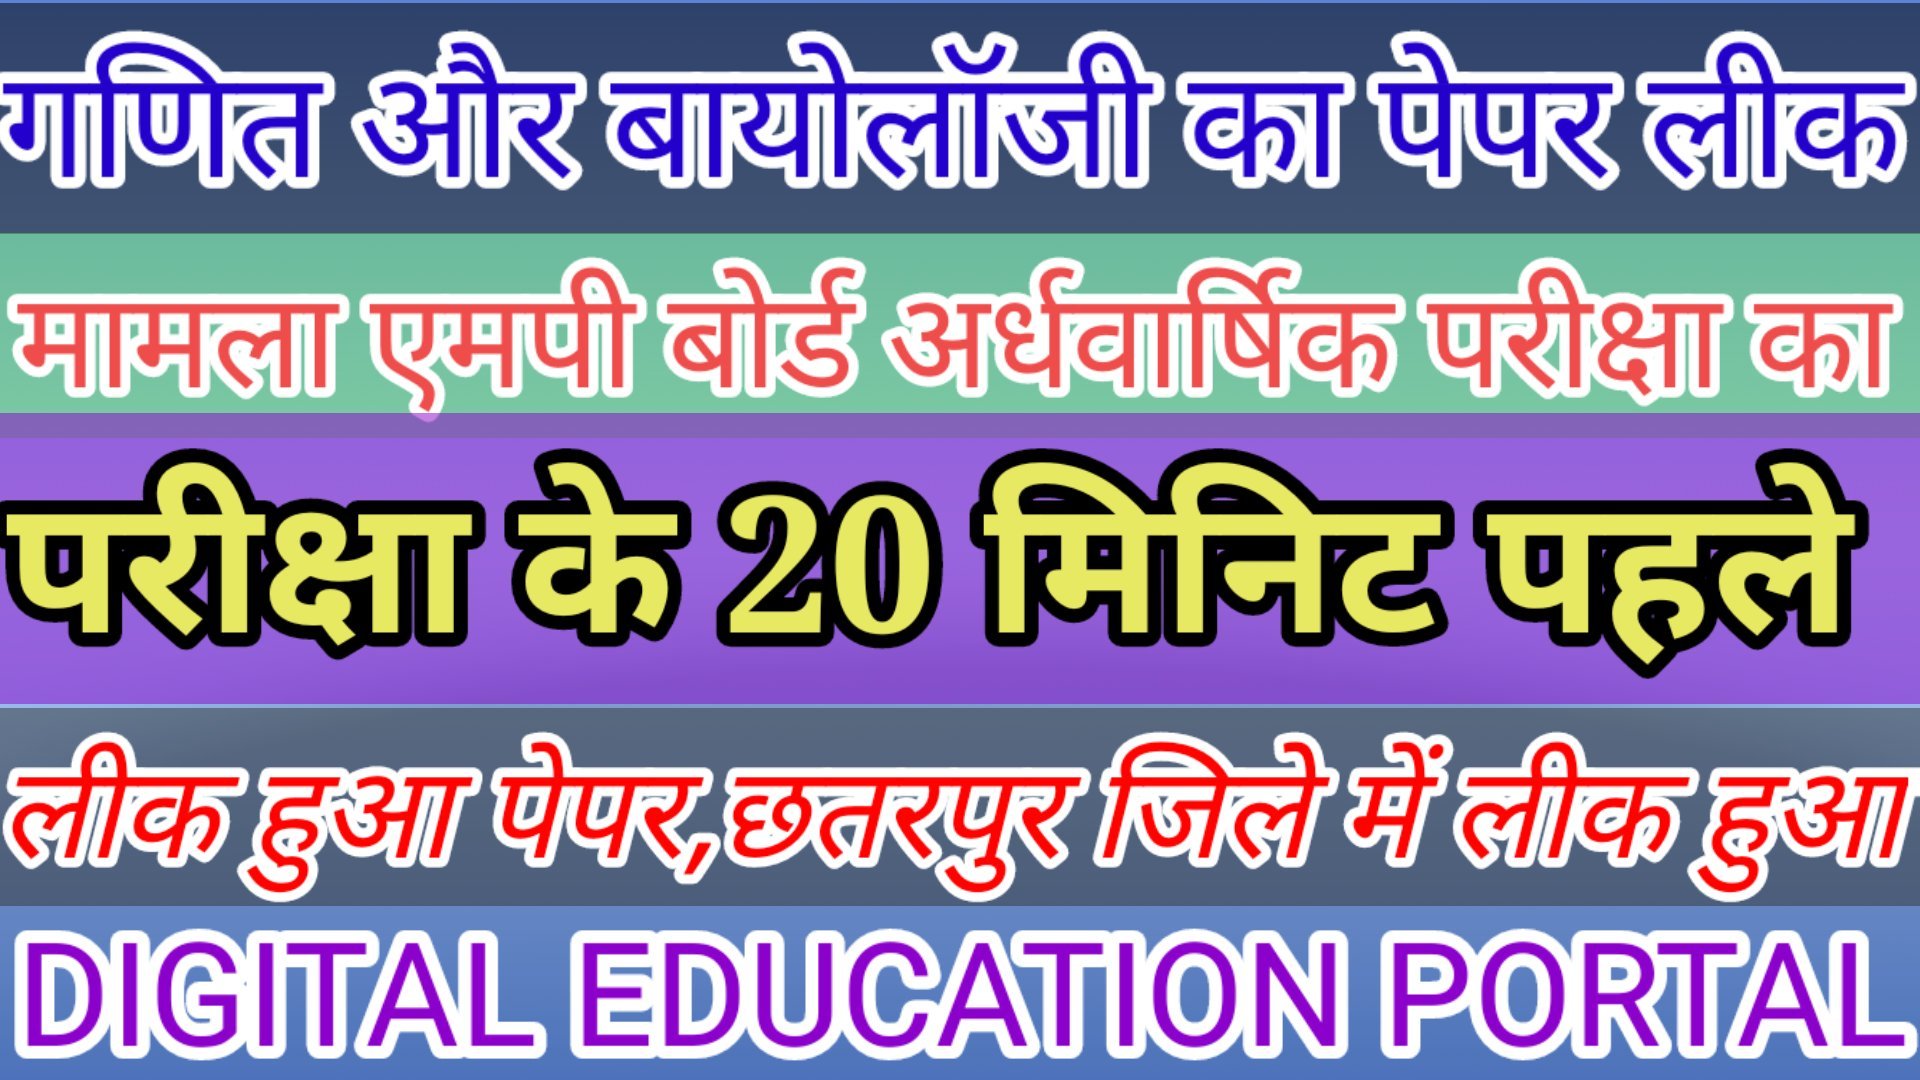 गणित और बायोलॉजी का पेपर लीक: छतरपुर जिले में 12वीं की चल रही है अर्धवार्षिक परीक्षा, 20 मिनट पहले लीक हुआ पेपर Digital Education Portal